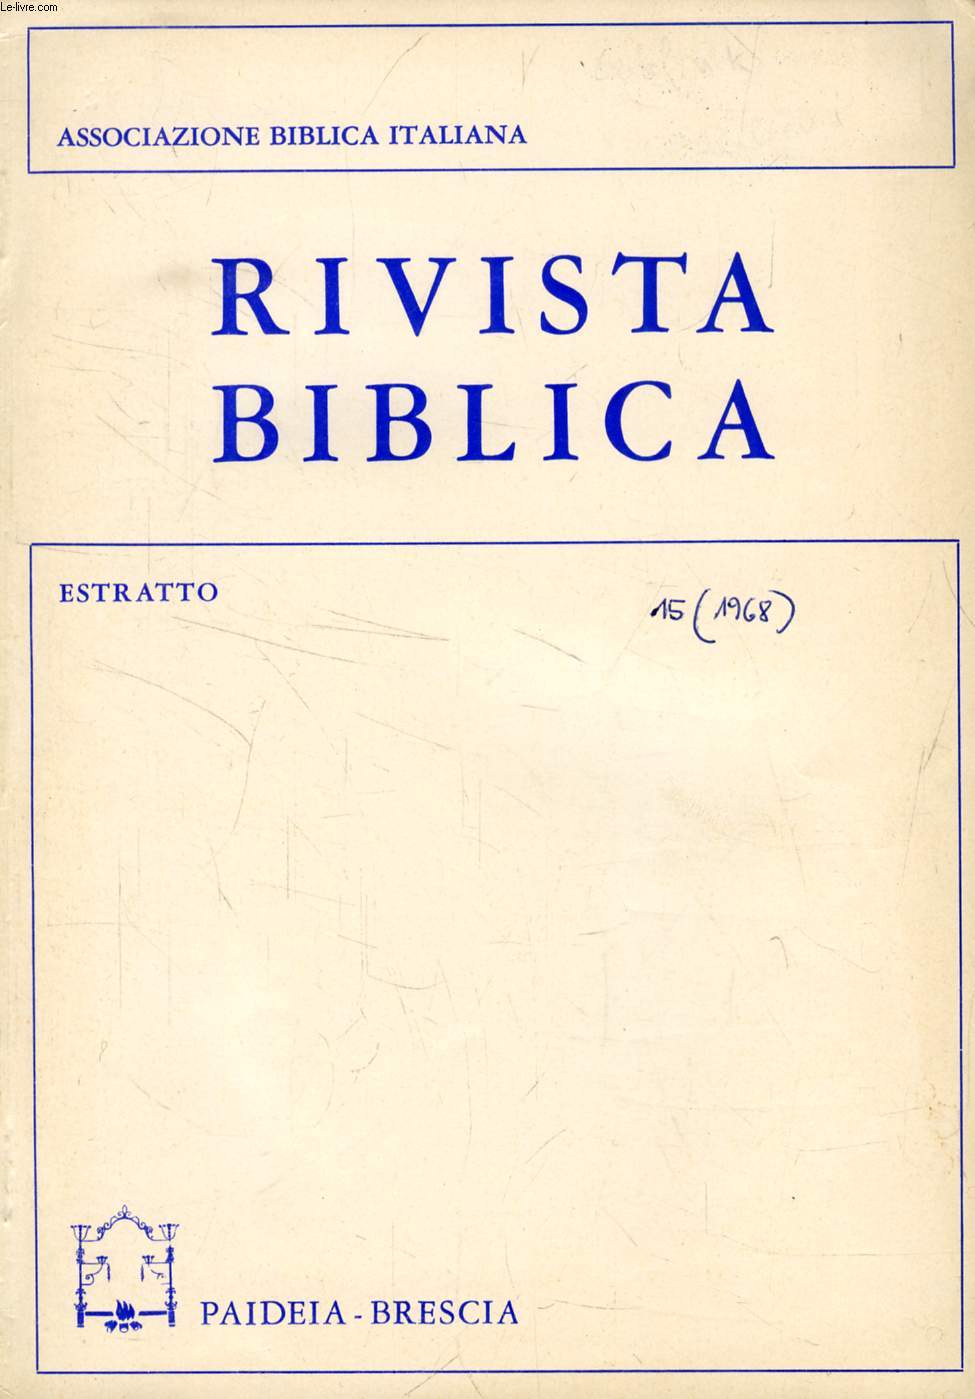 RIVISTA BIBLICA, 15, 1968, ESTRATTO, RILIEVI SULLA TRADIZIONE DELL'ALLEANZA CON I PATRIARCHI